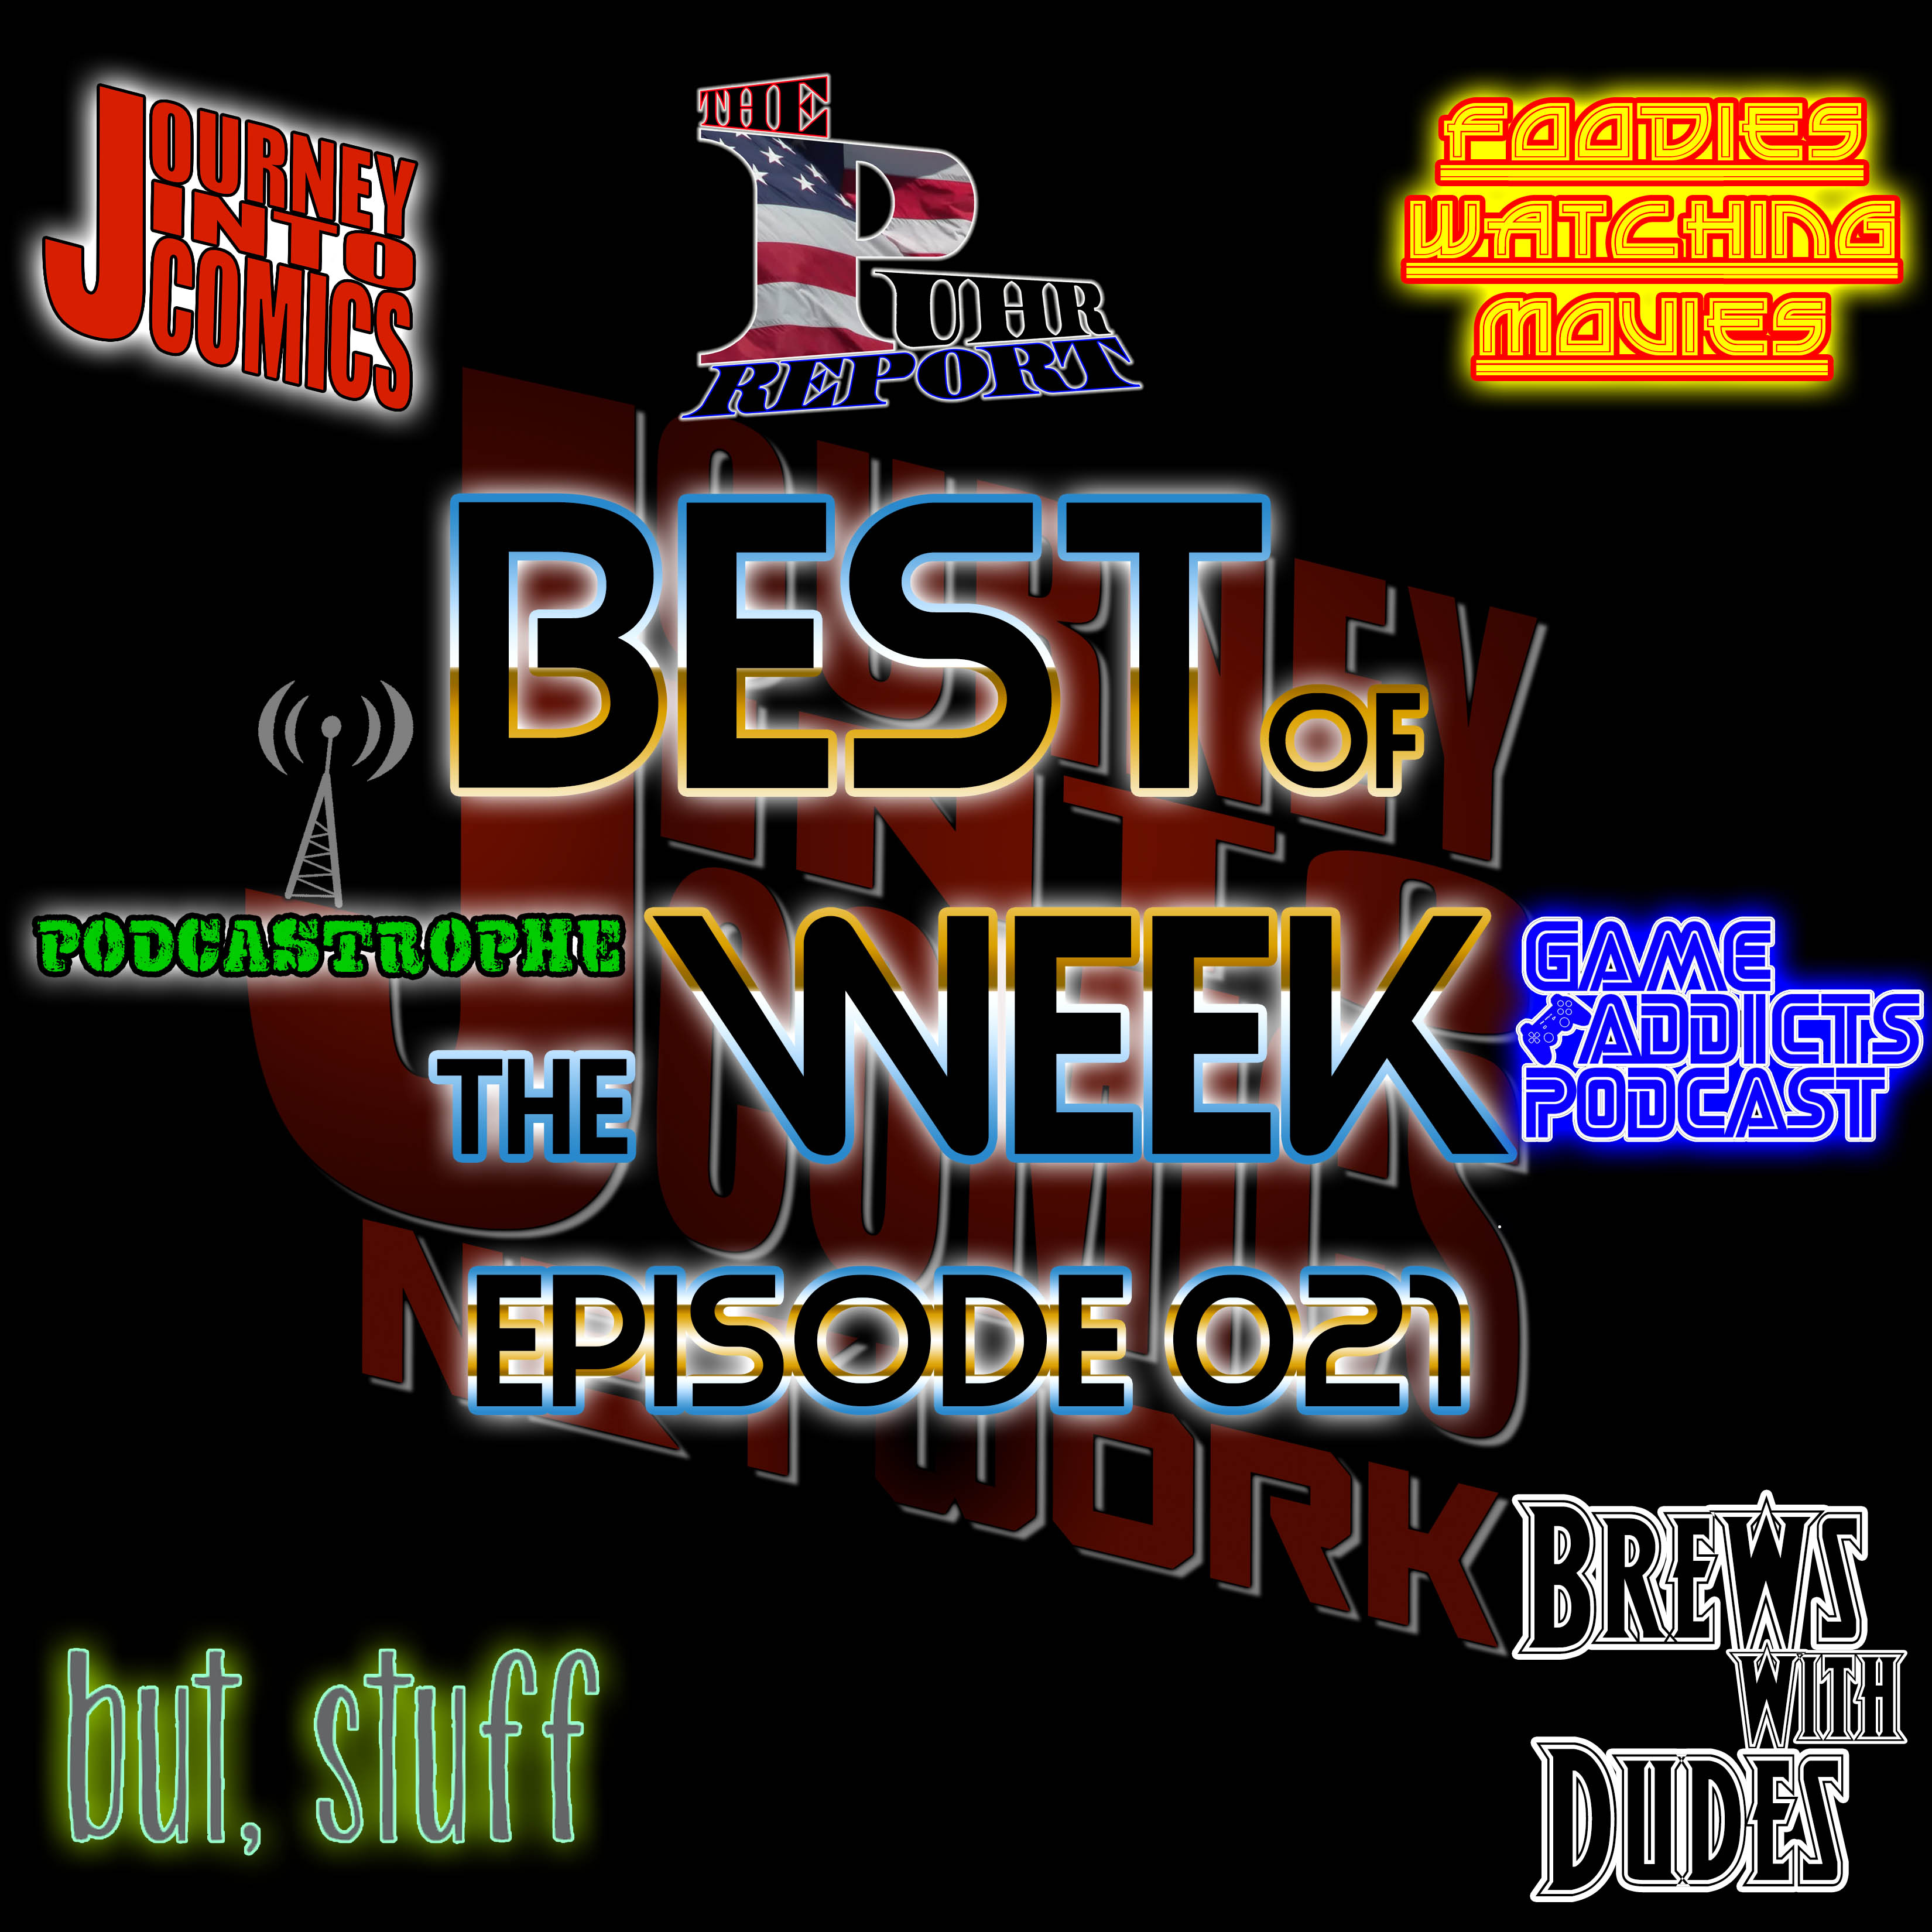 Best of the Week - 02/26/18